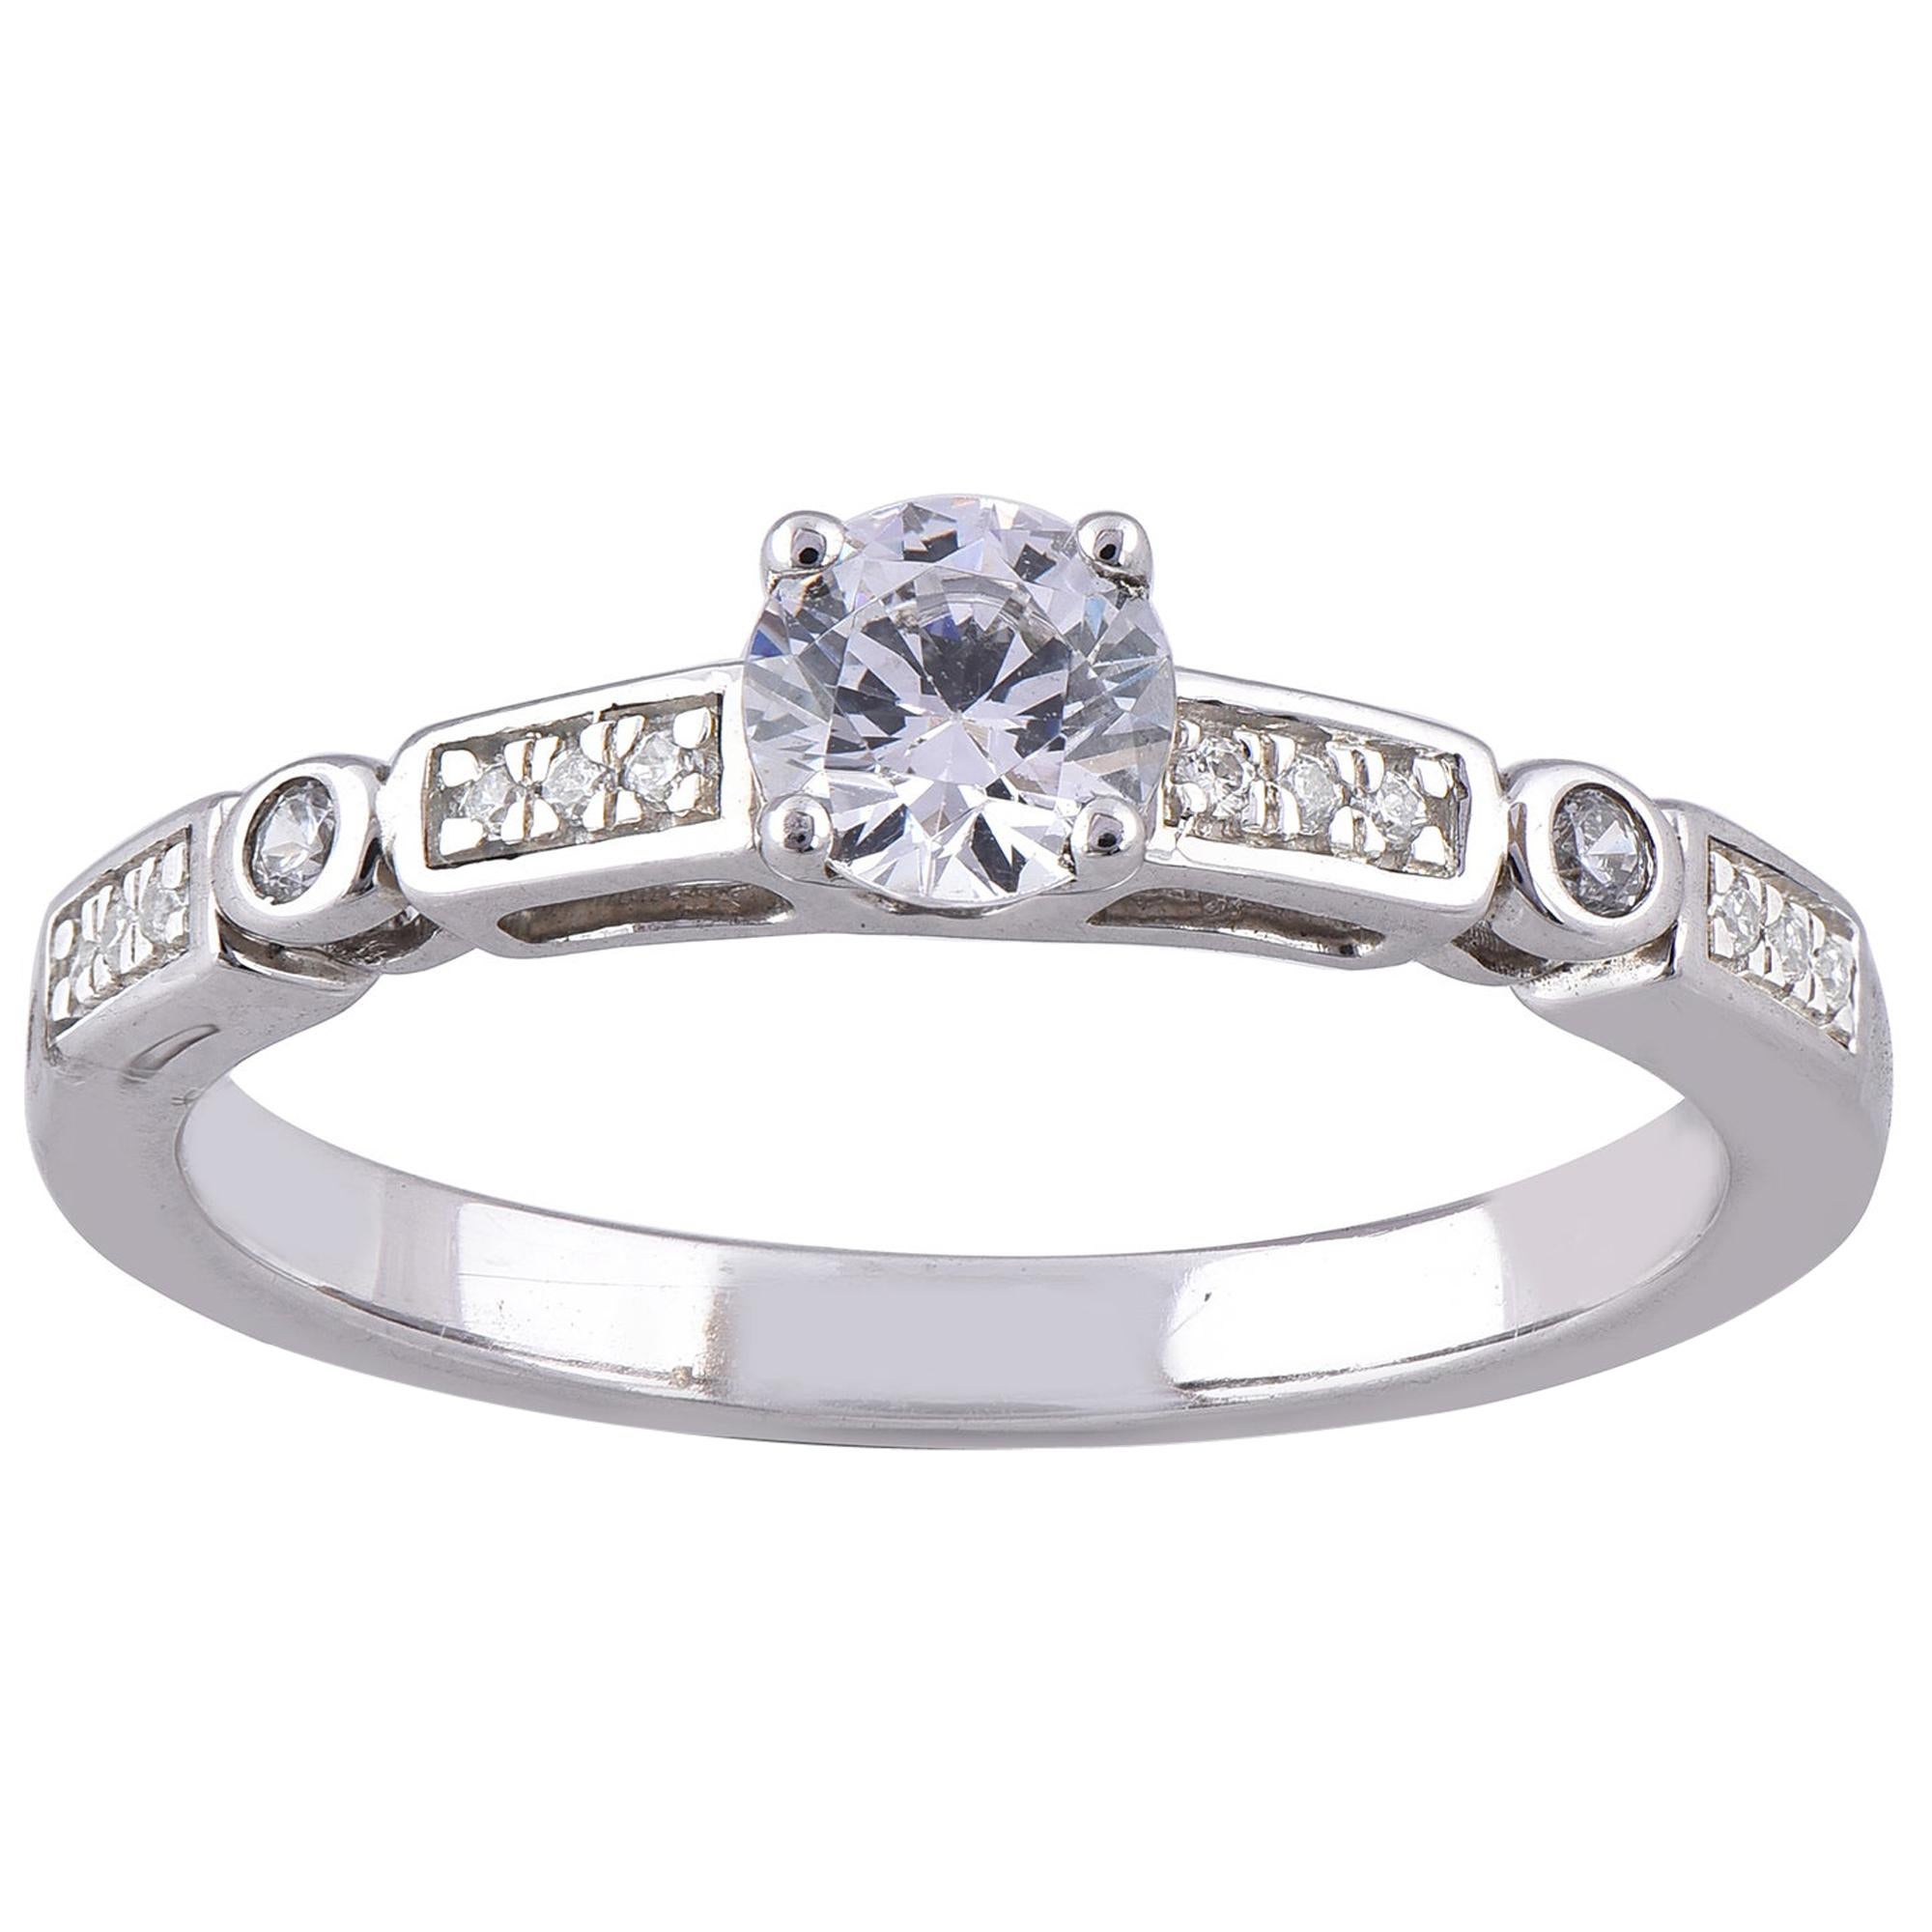 TJD 0.50 Carat Round Diamond 18 Karat White Gold Engagement Ring